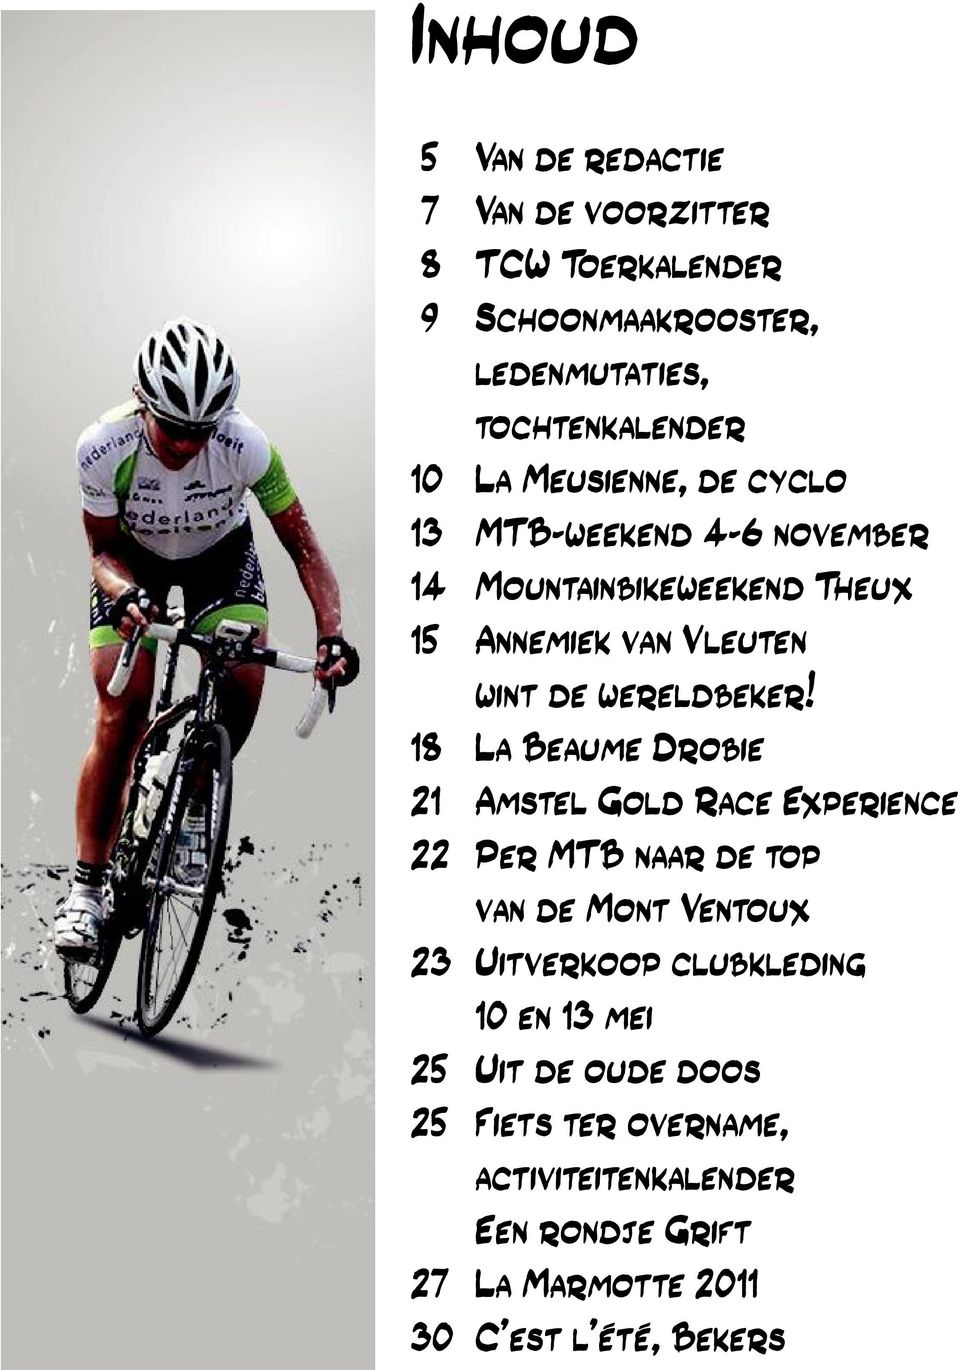 18 La Beaume Drobie 21 Amstel Gold Race Experience 22 Per MTB naar de top van de Mont Ventoux 23 Uitverkoop clubkleding 10